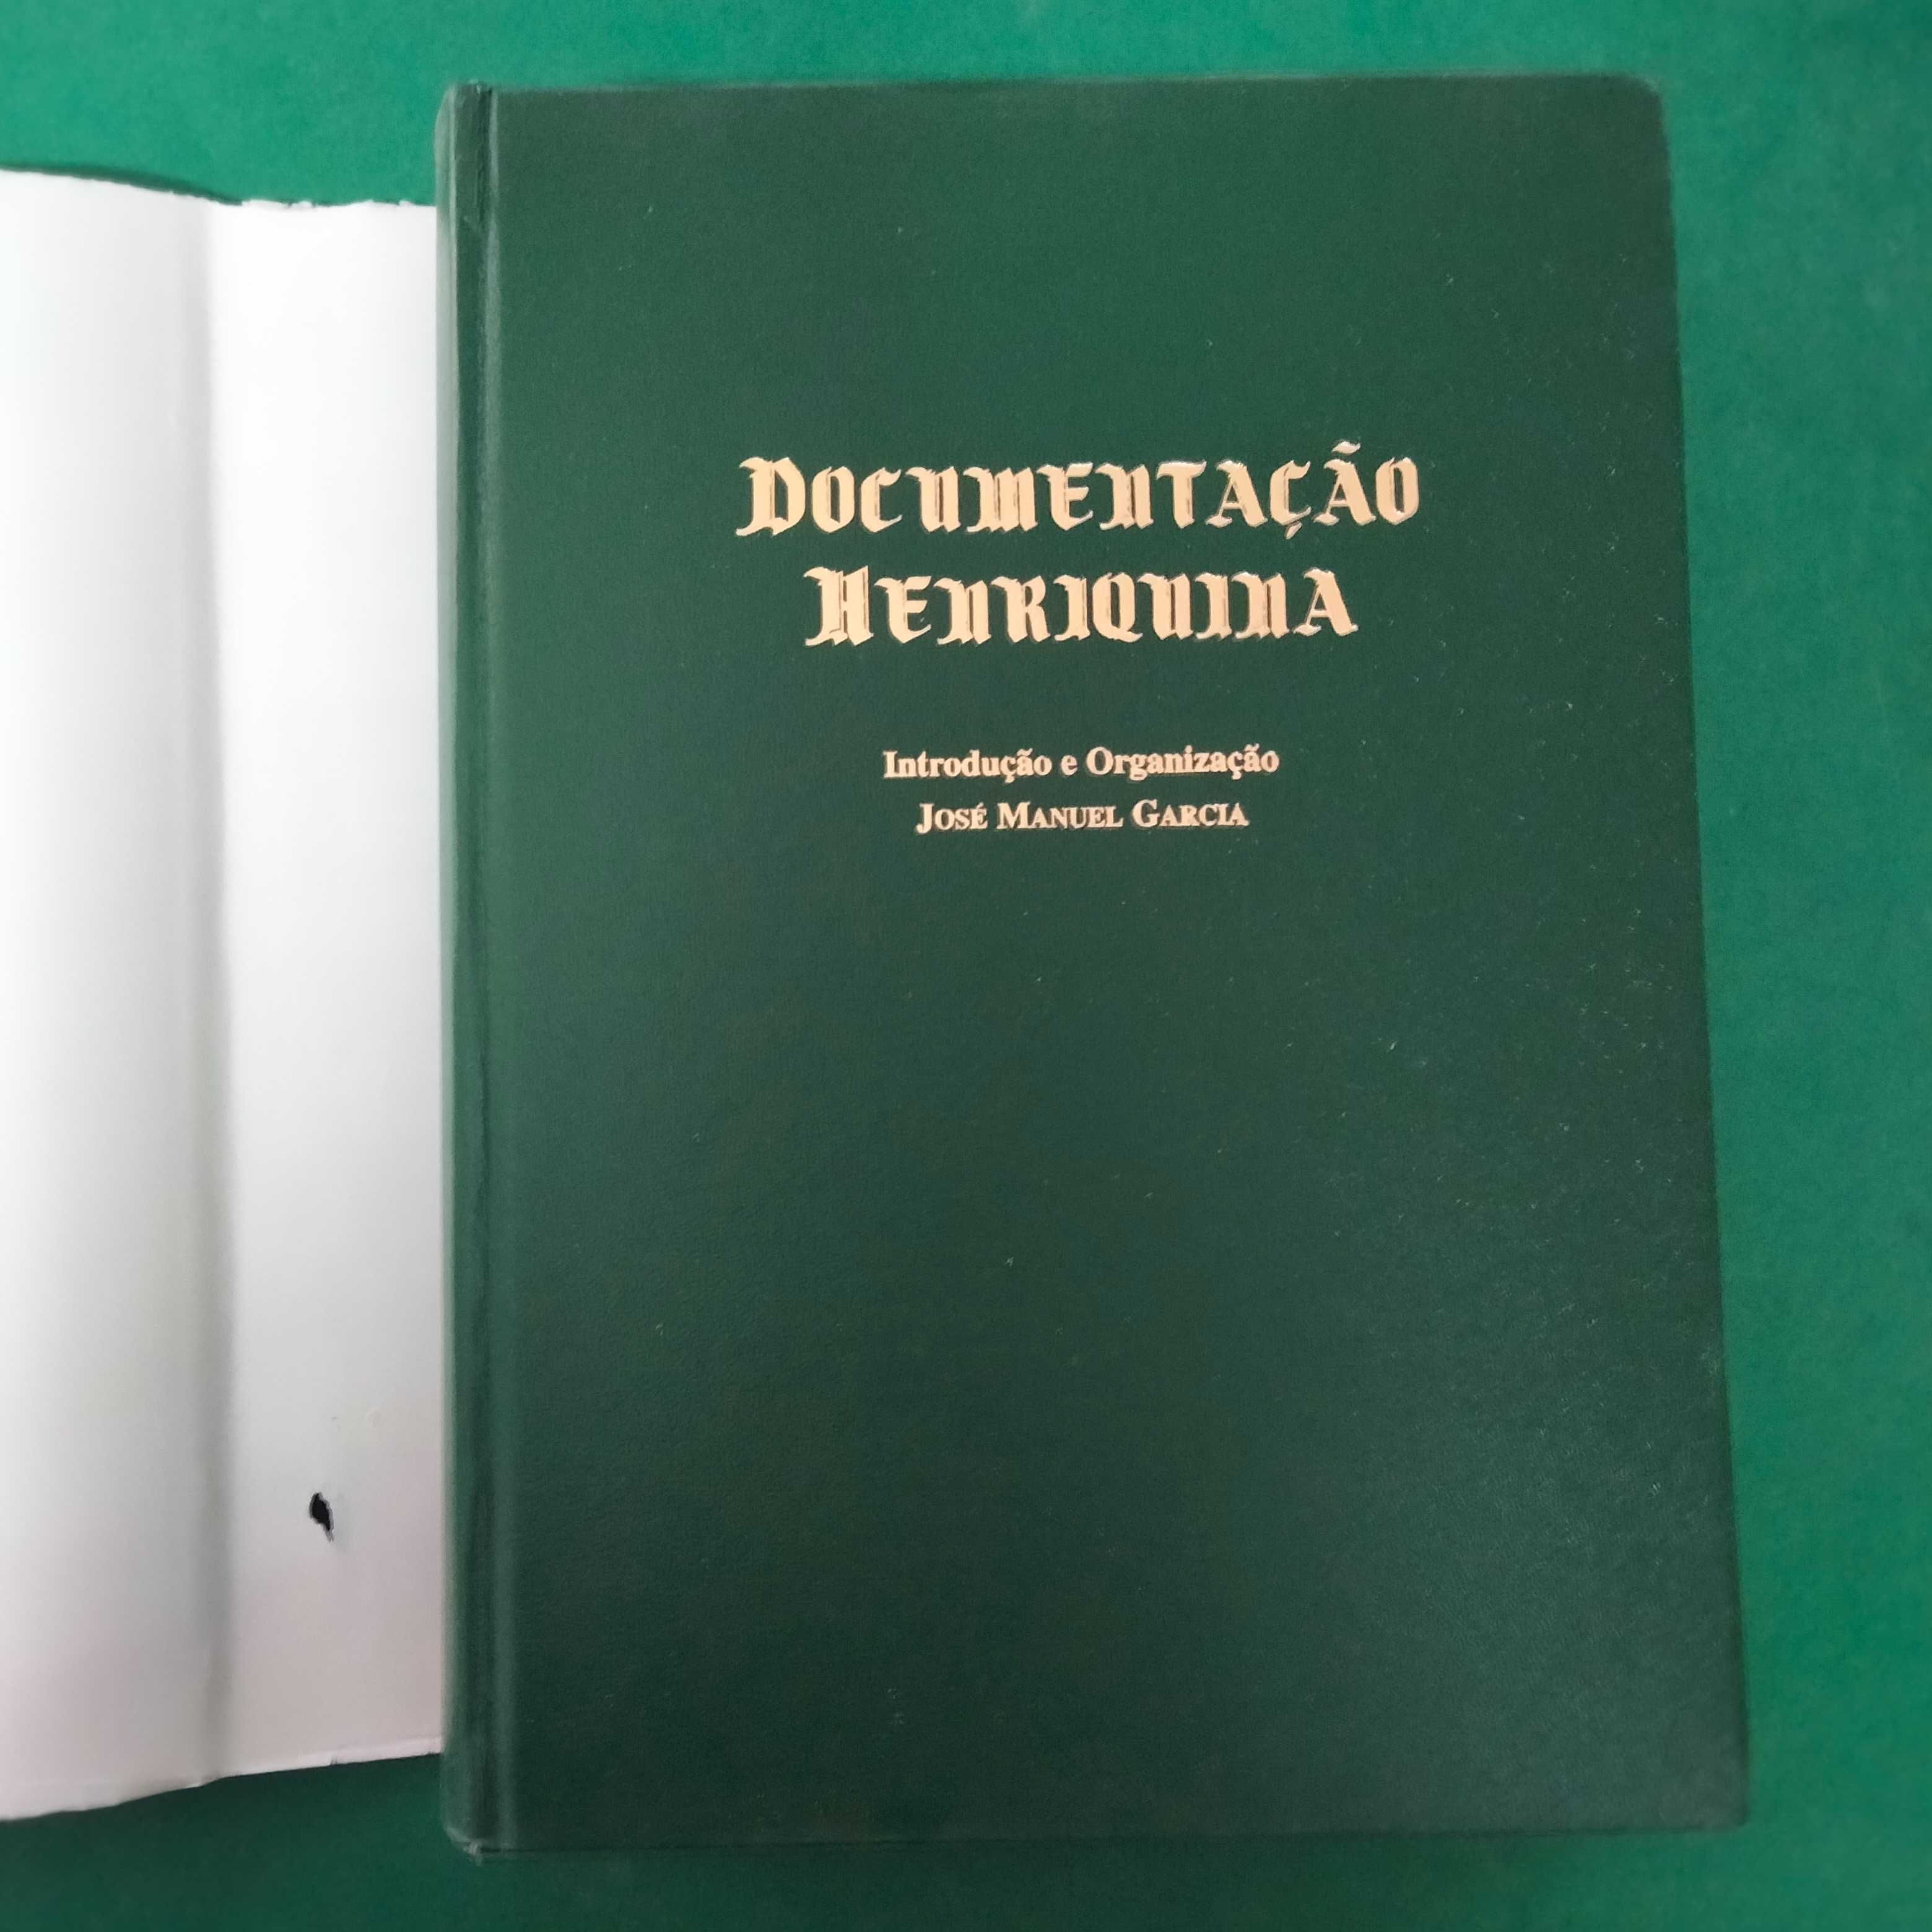 Documentação Henriquina - José Manuel Garcia